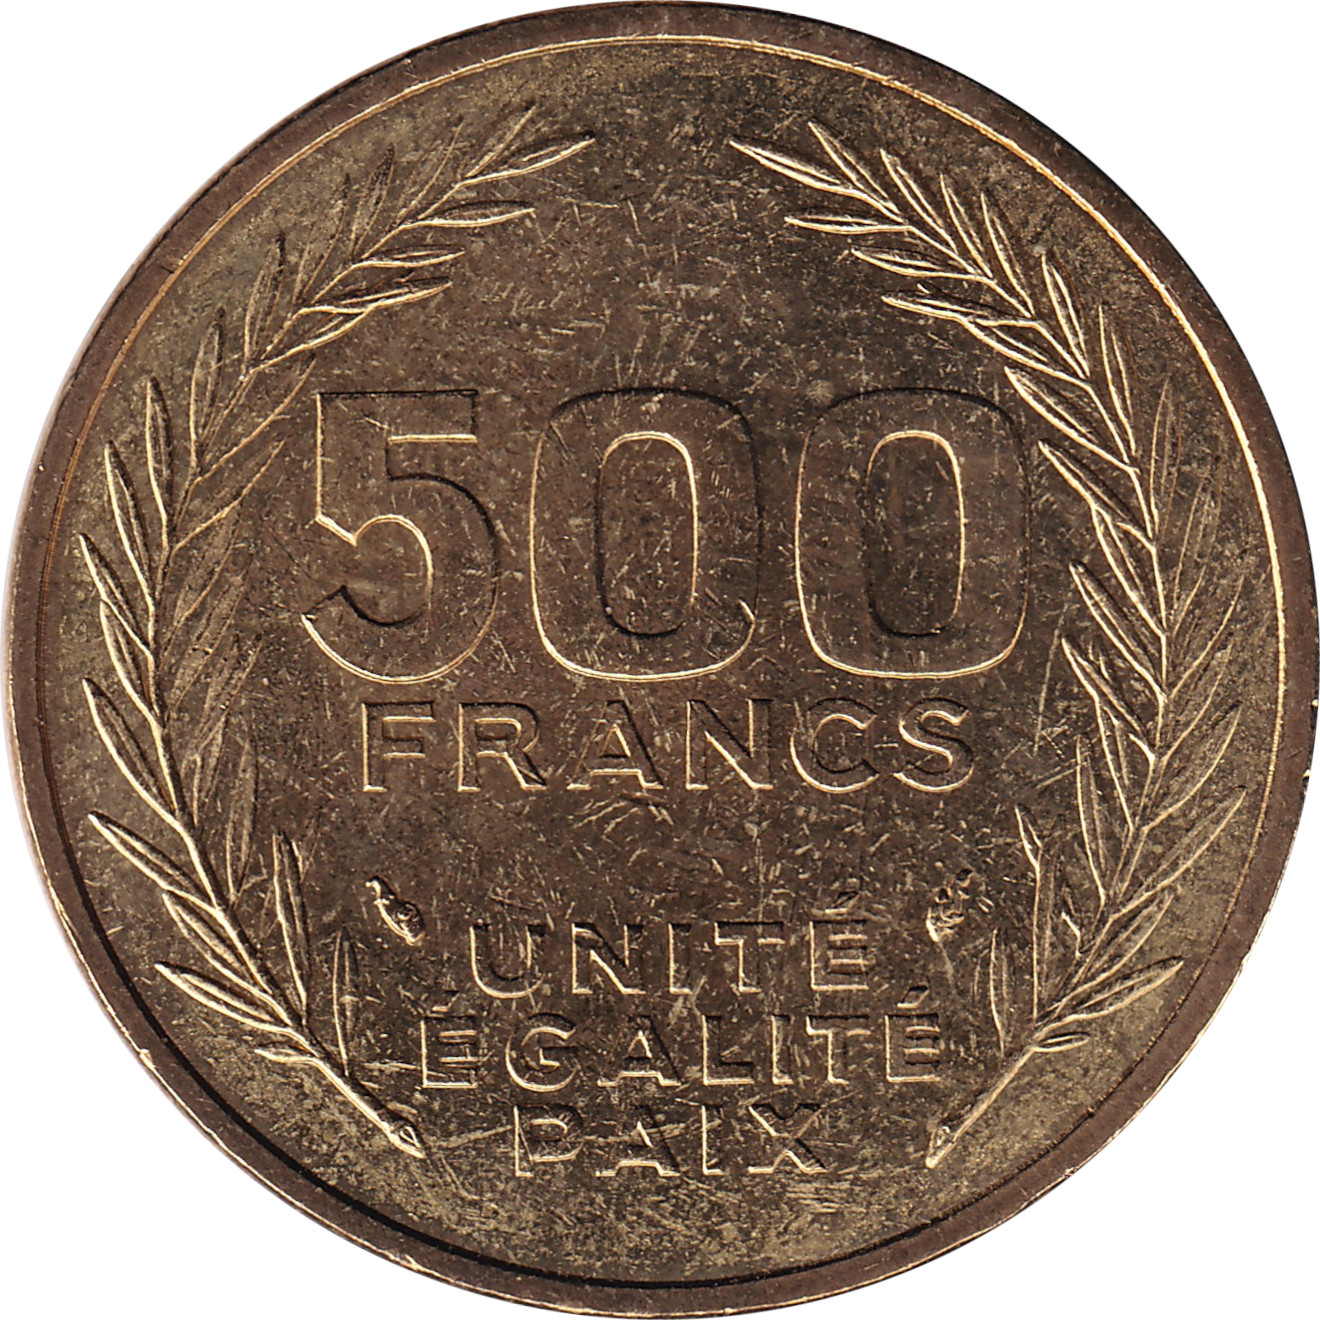 500 francs - Knifes